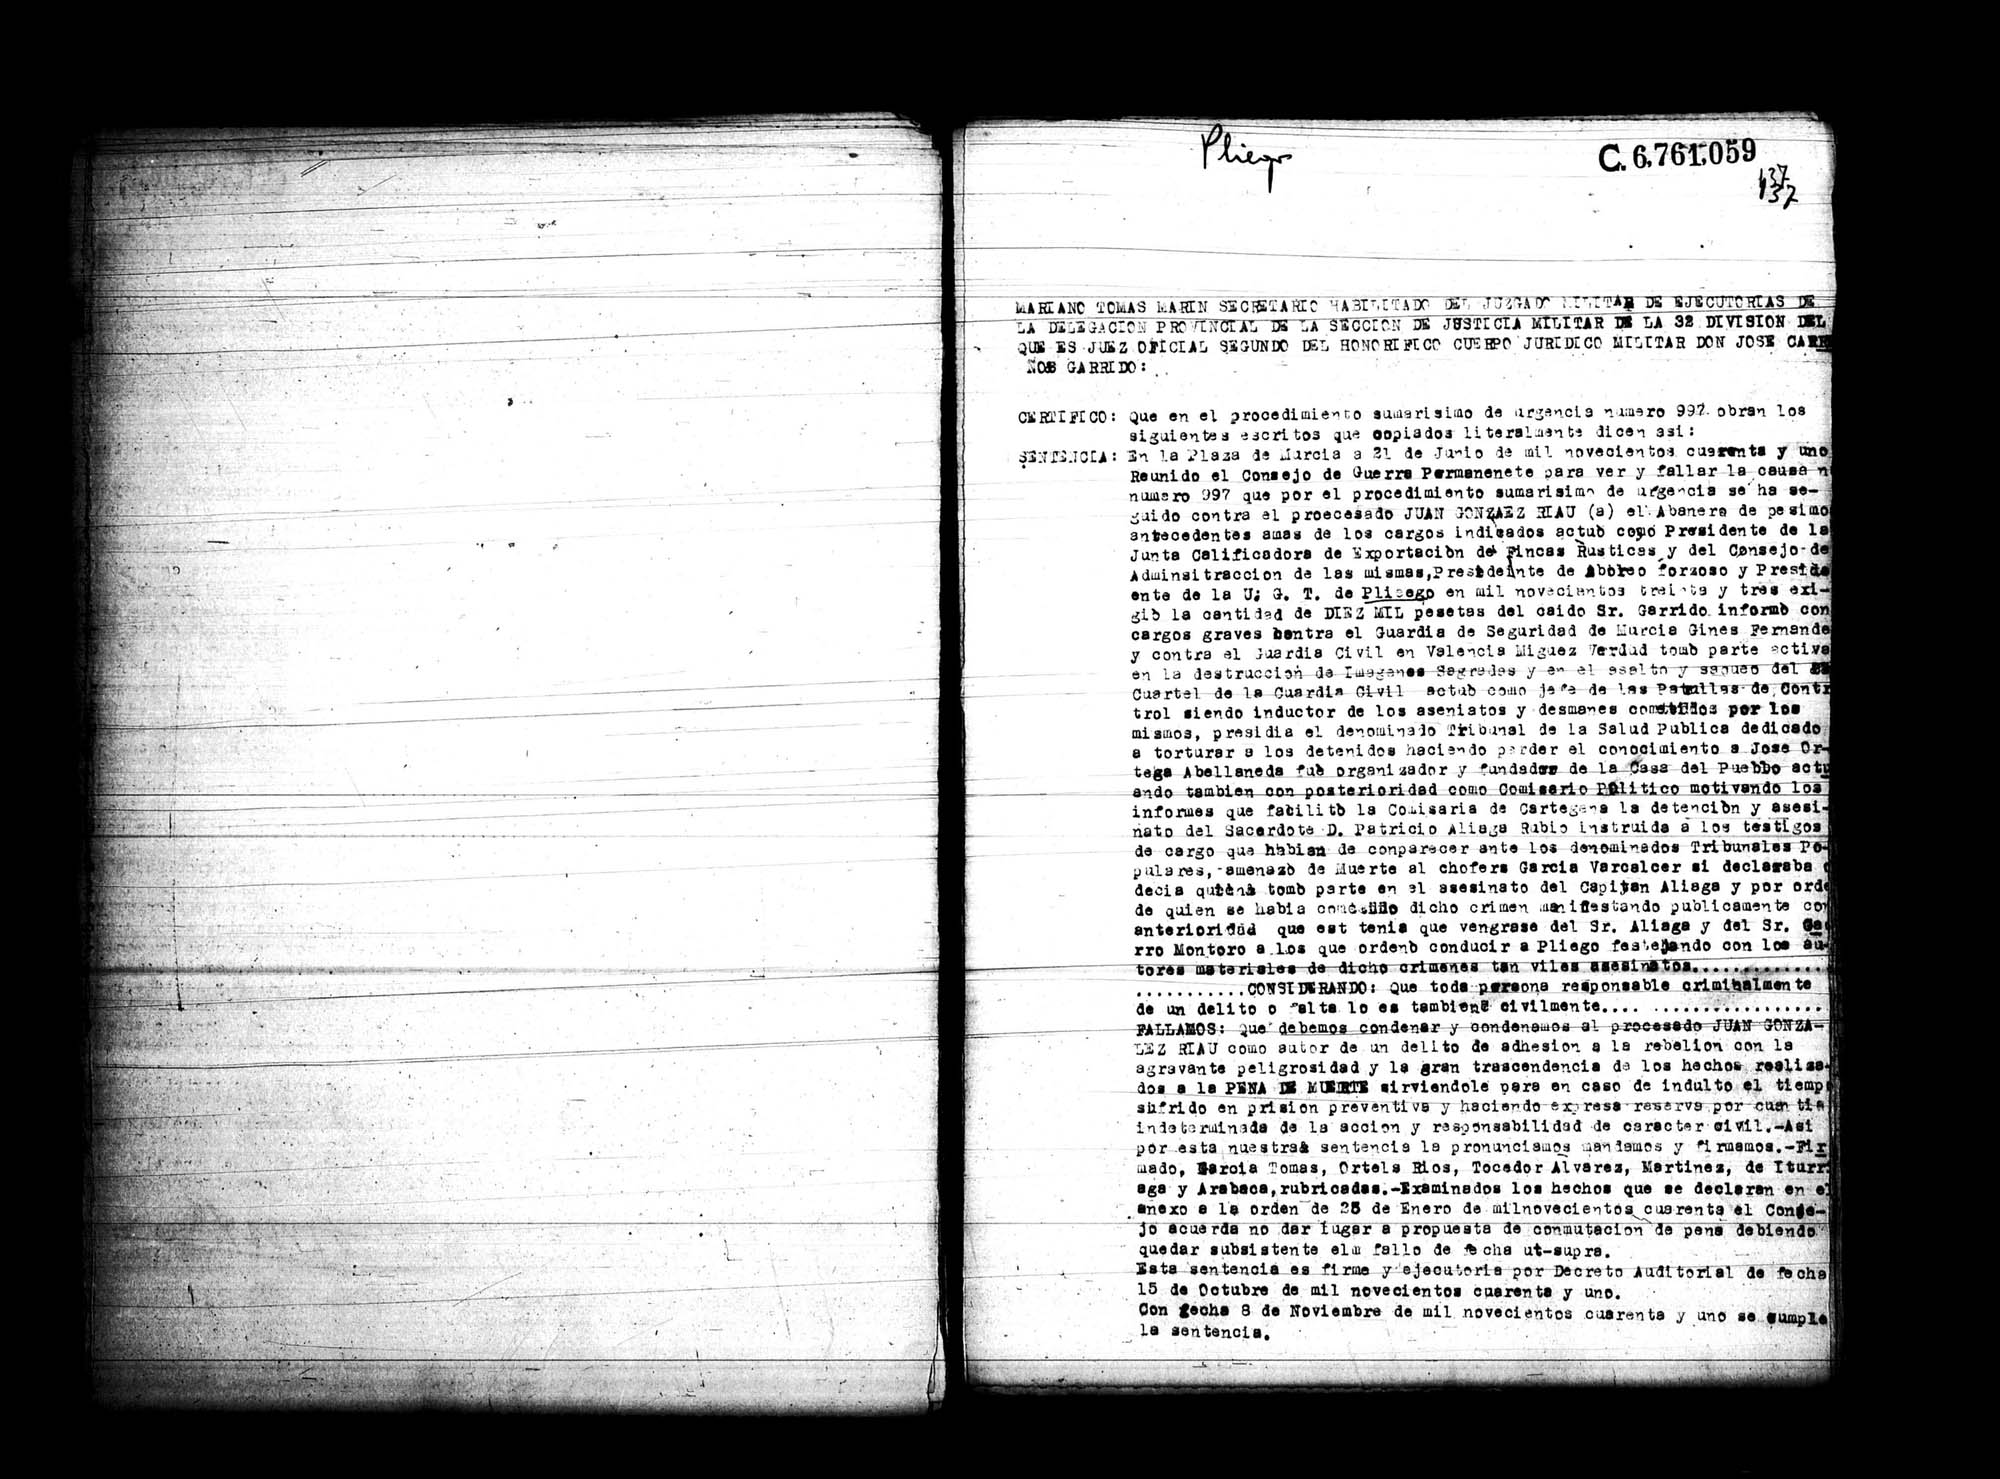 Certificado de la sentencia pronunciada contra Juan González Riau, causa 997, el 21 de junio de 1941 en Murcia.